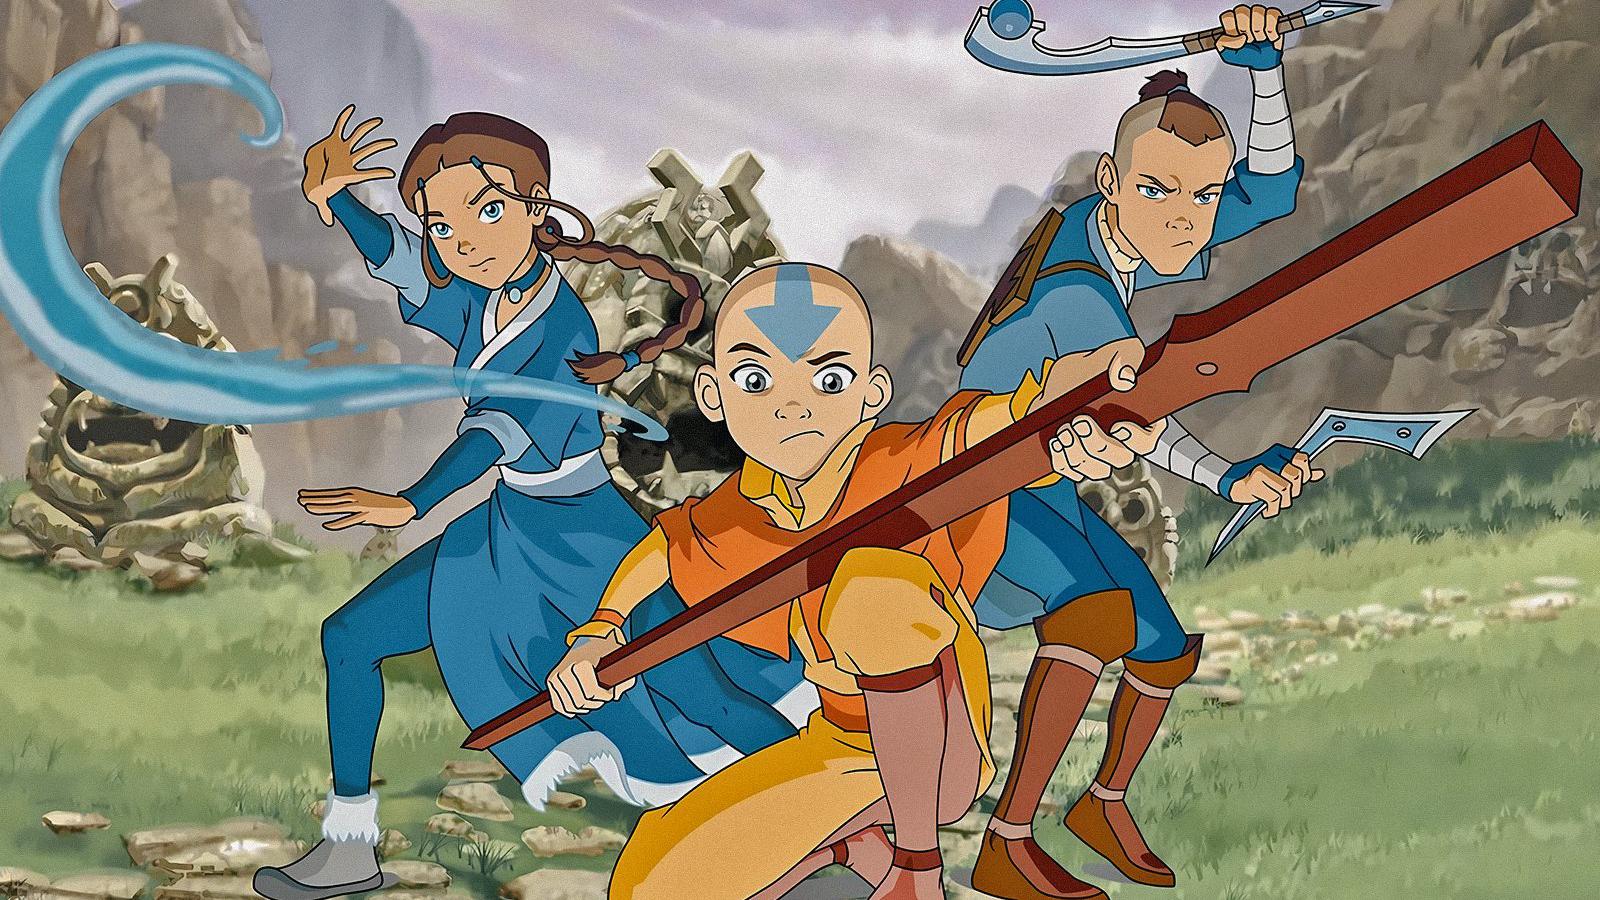 5 cartoon in stile Avatar da guardare dopo la serie Netflix